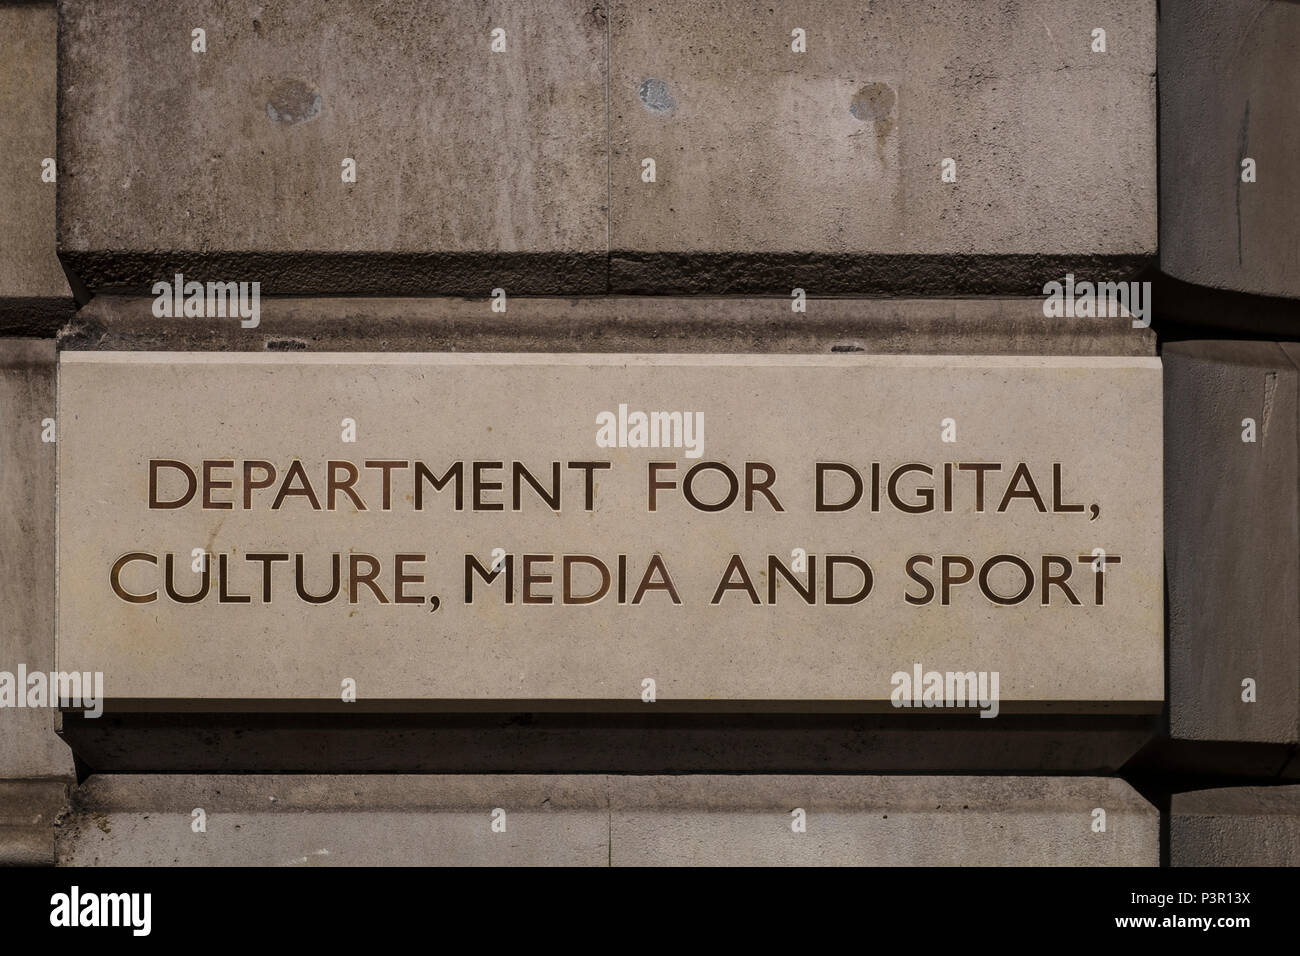 Ministère de la Culture, numérique, les médias et le sport enseigne à l'extérieur du Parlement 100 Street, Londres, Angleterre, Royaume-Uni Banque D'Images